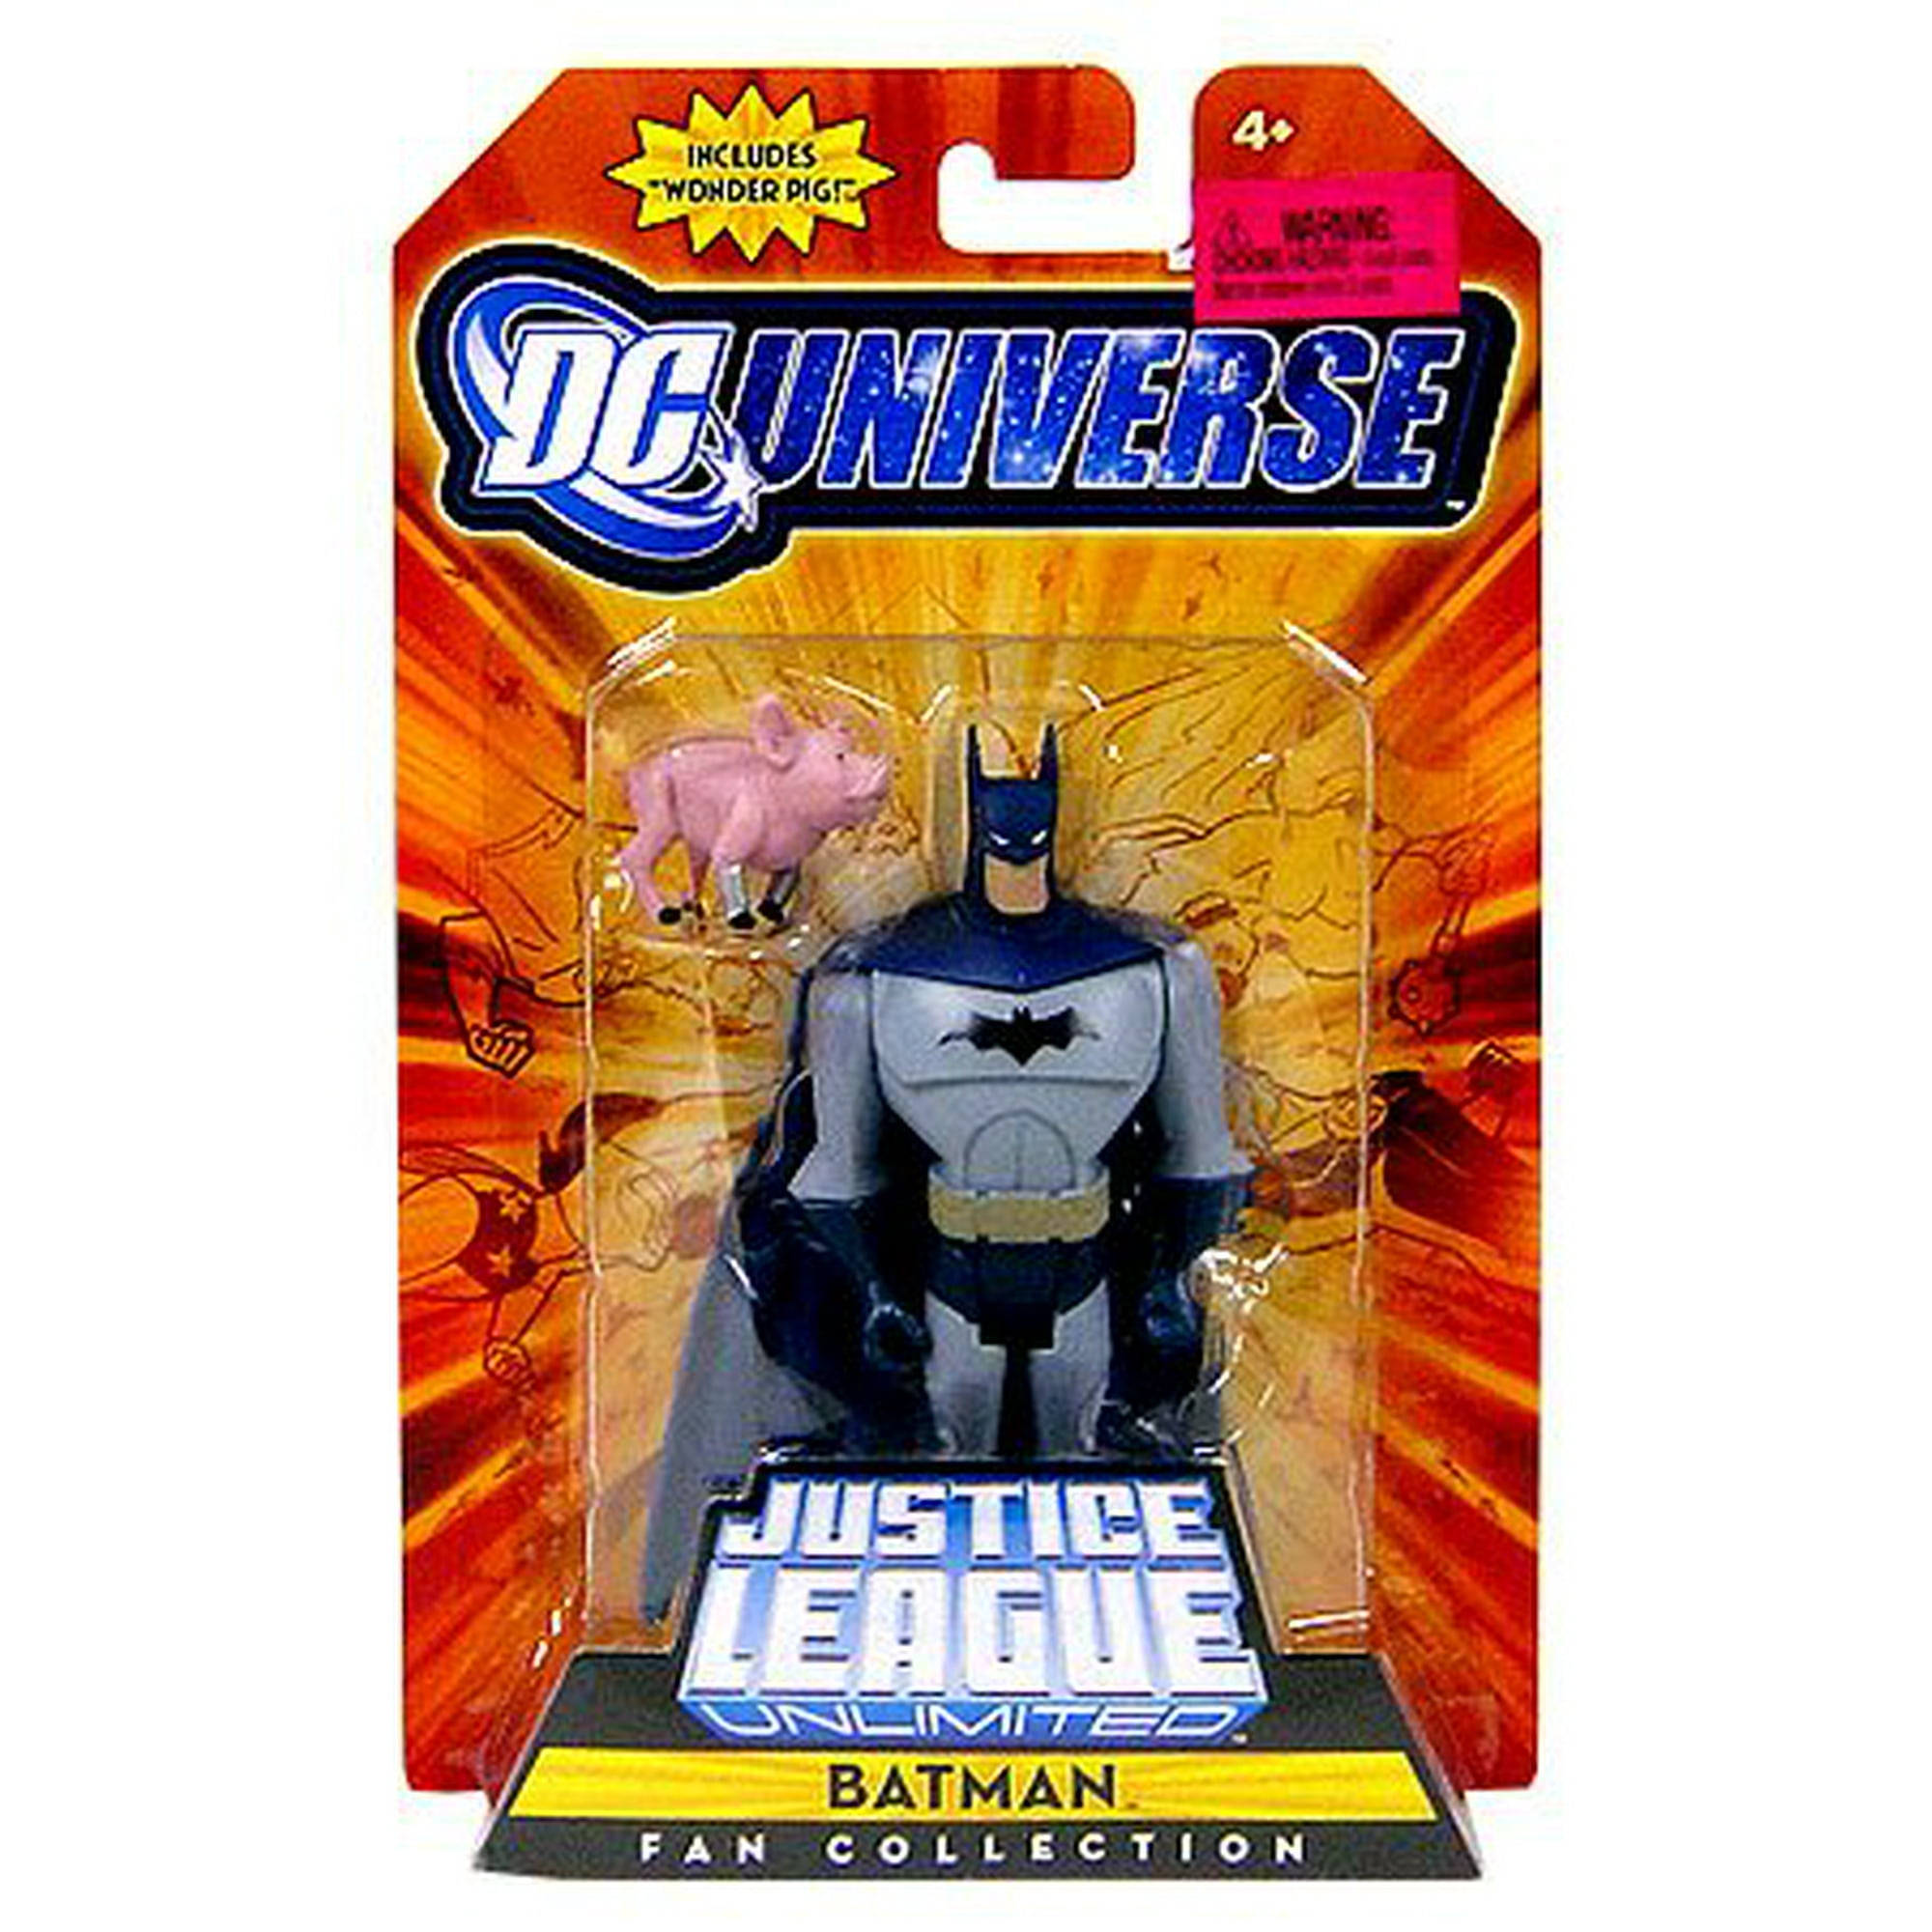 Dc Universe Justice League Unlimited Fan collection Action Figure Batman by  Dc comics | Walmart Canada